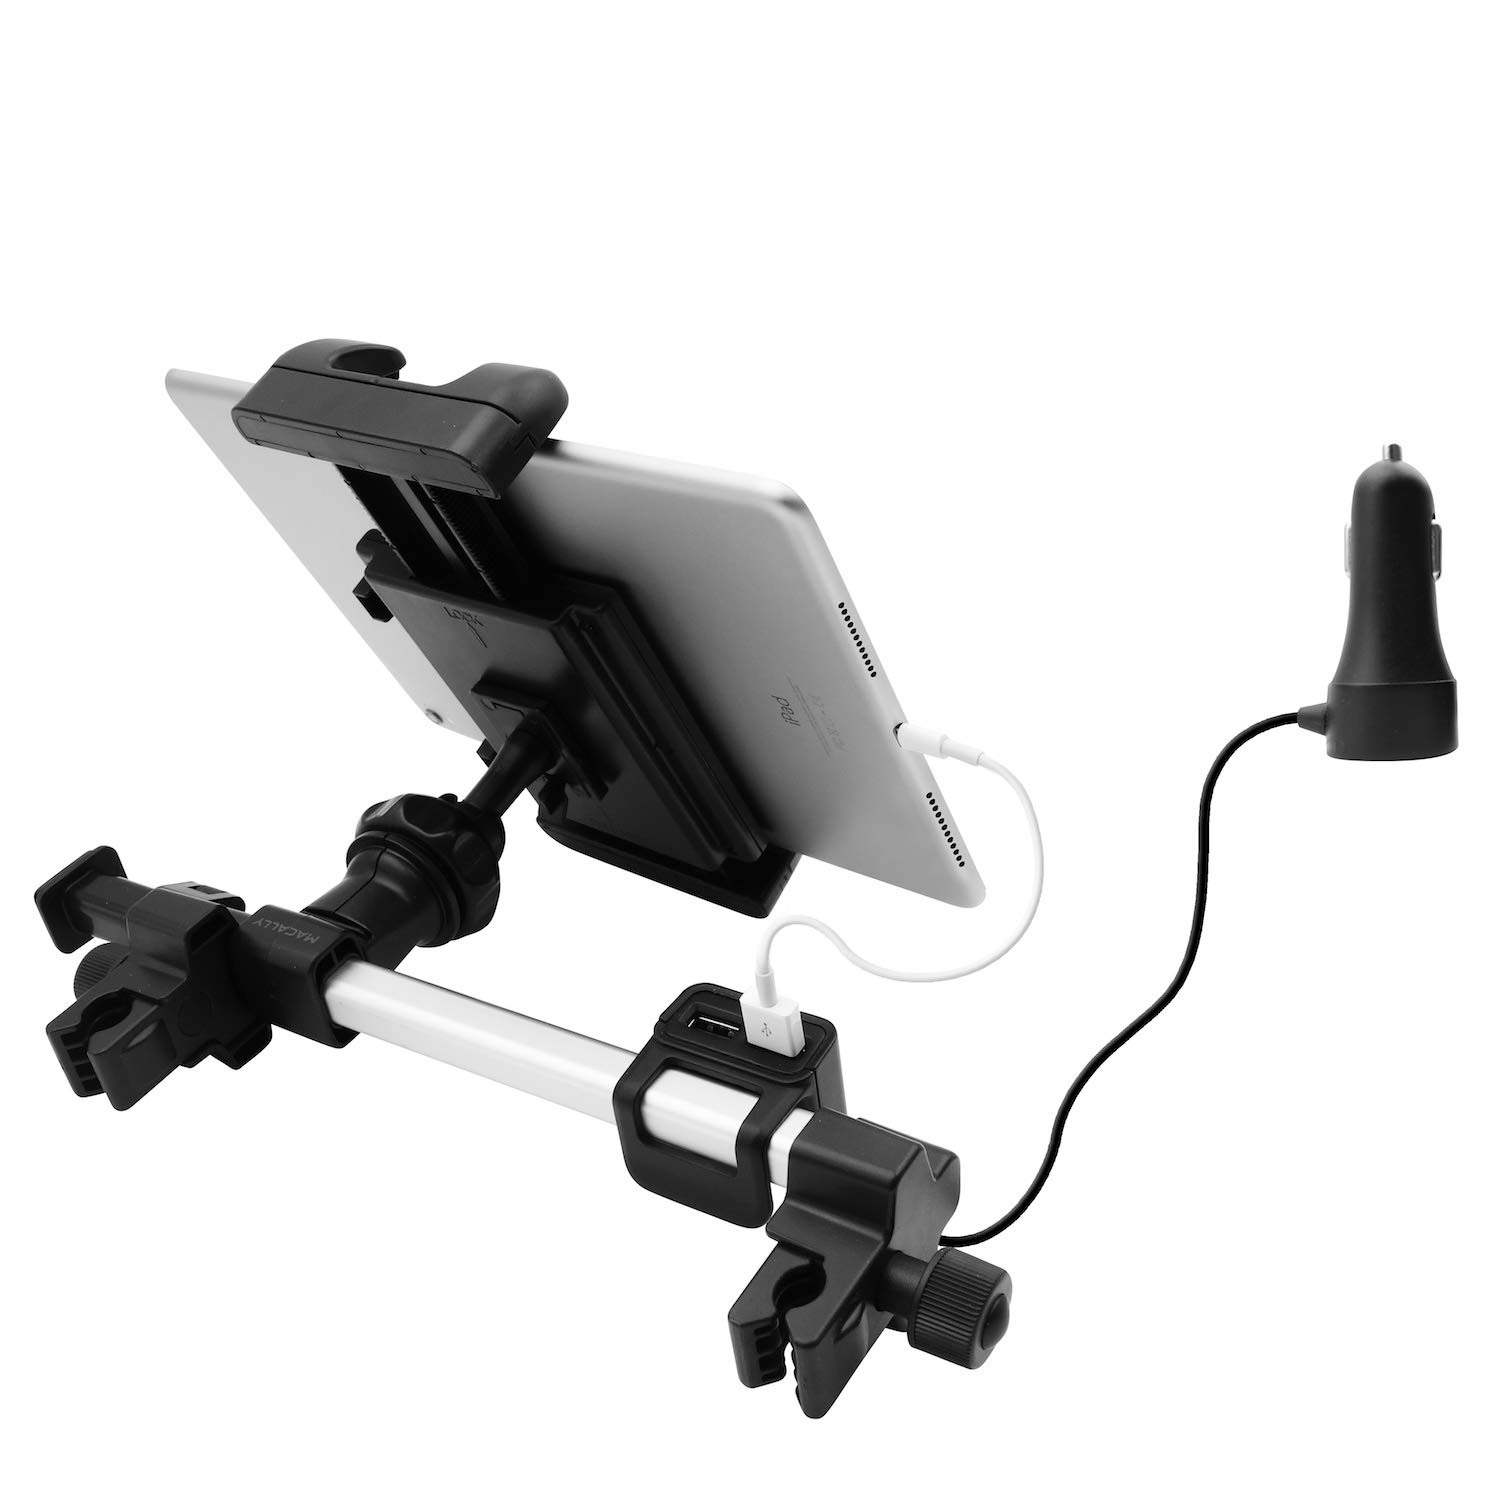 Macally Auto-Kopfstützen Tablet-Halterung mit USB-Lade-Hub & Zigarettenanzünder-Adapter – lädt 4 Geräte mit 3 USB-A & 1 USB-C-Port, Kfz-Halterung für iPad & Tablet bis 25,4 cm Breite